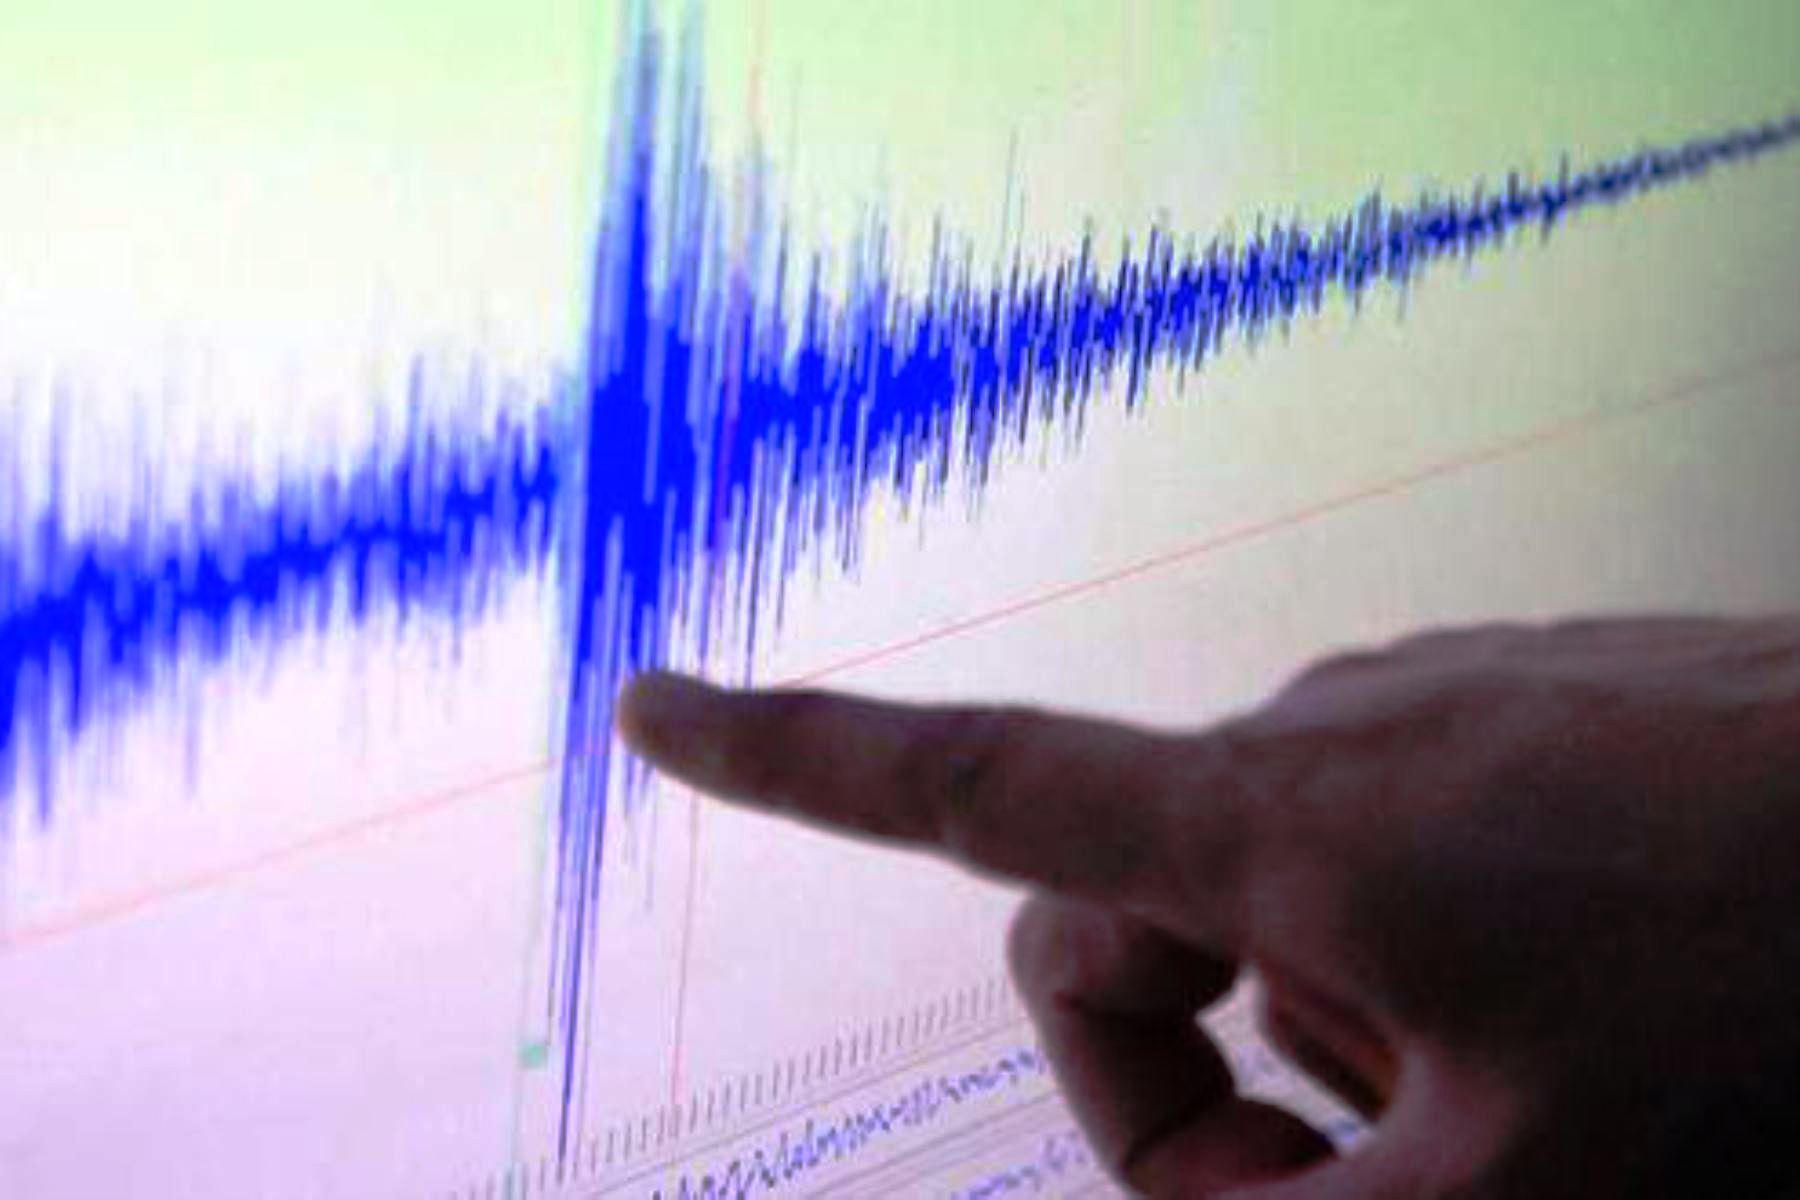 Sismo de magnitud 3.8 grados se registró este mediodía en Lima